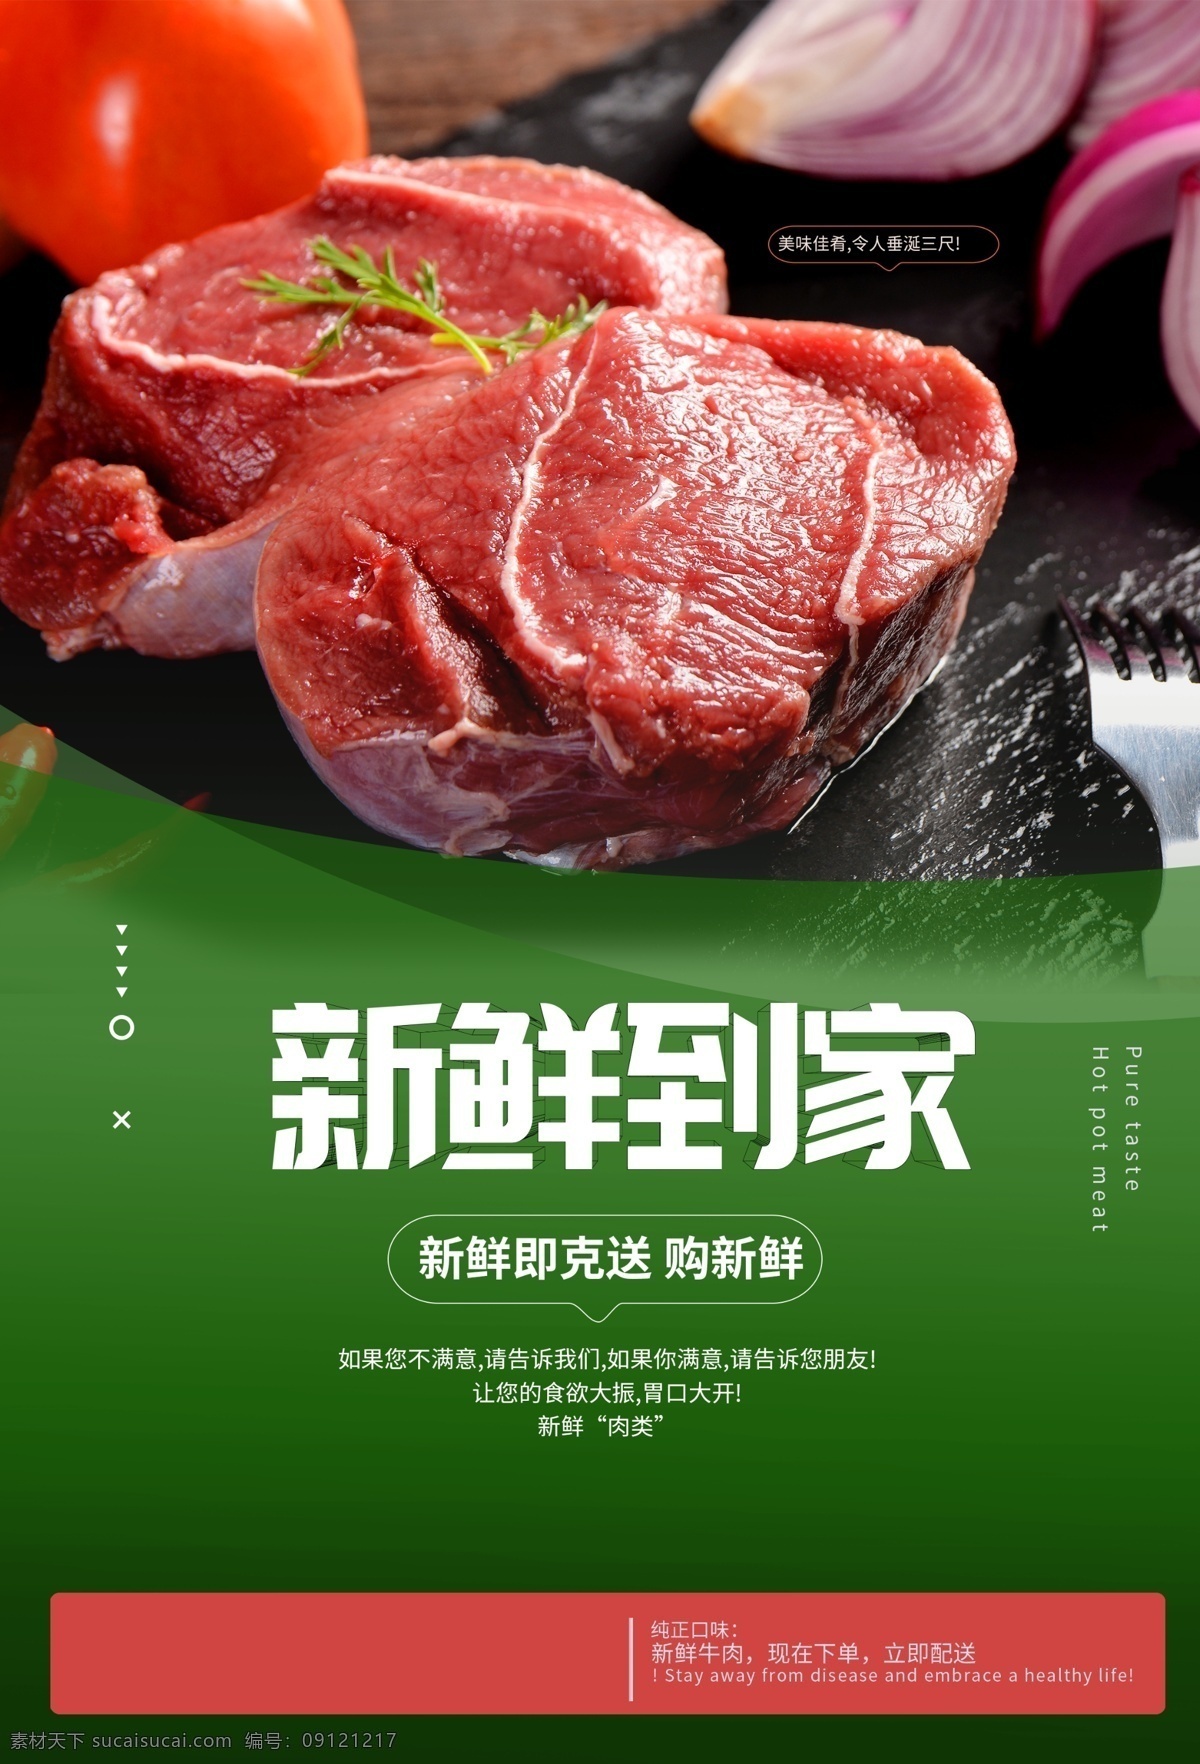 牛排 猪肉 超市 活动 宣传海报 宣传 海报 餐饮美食 类